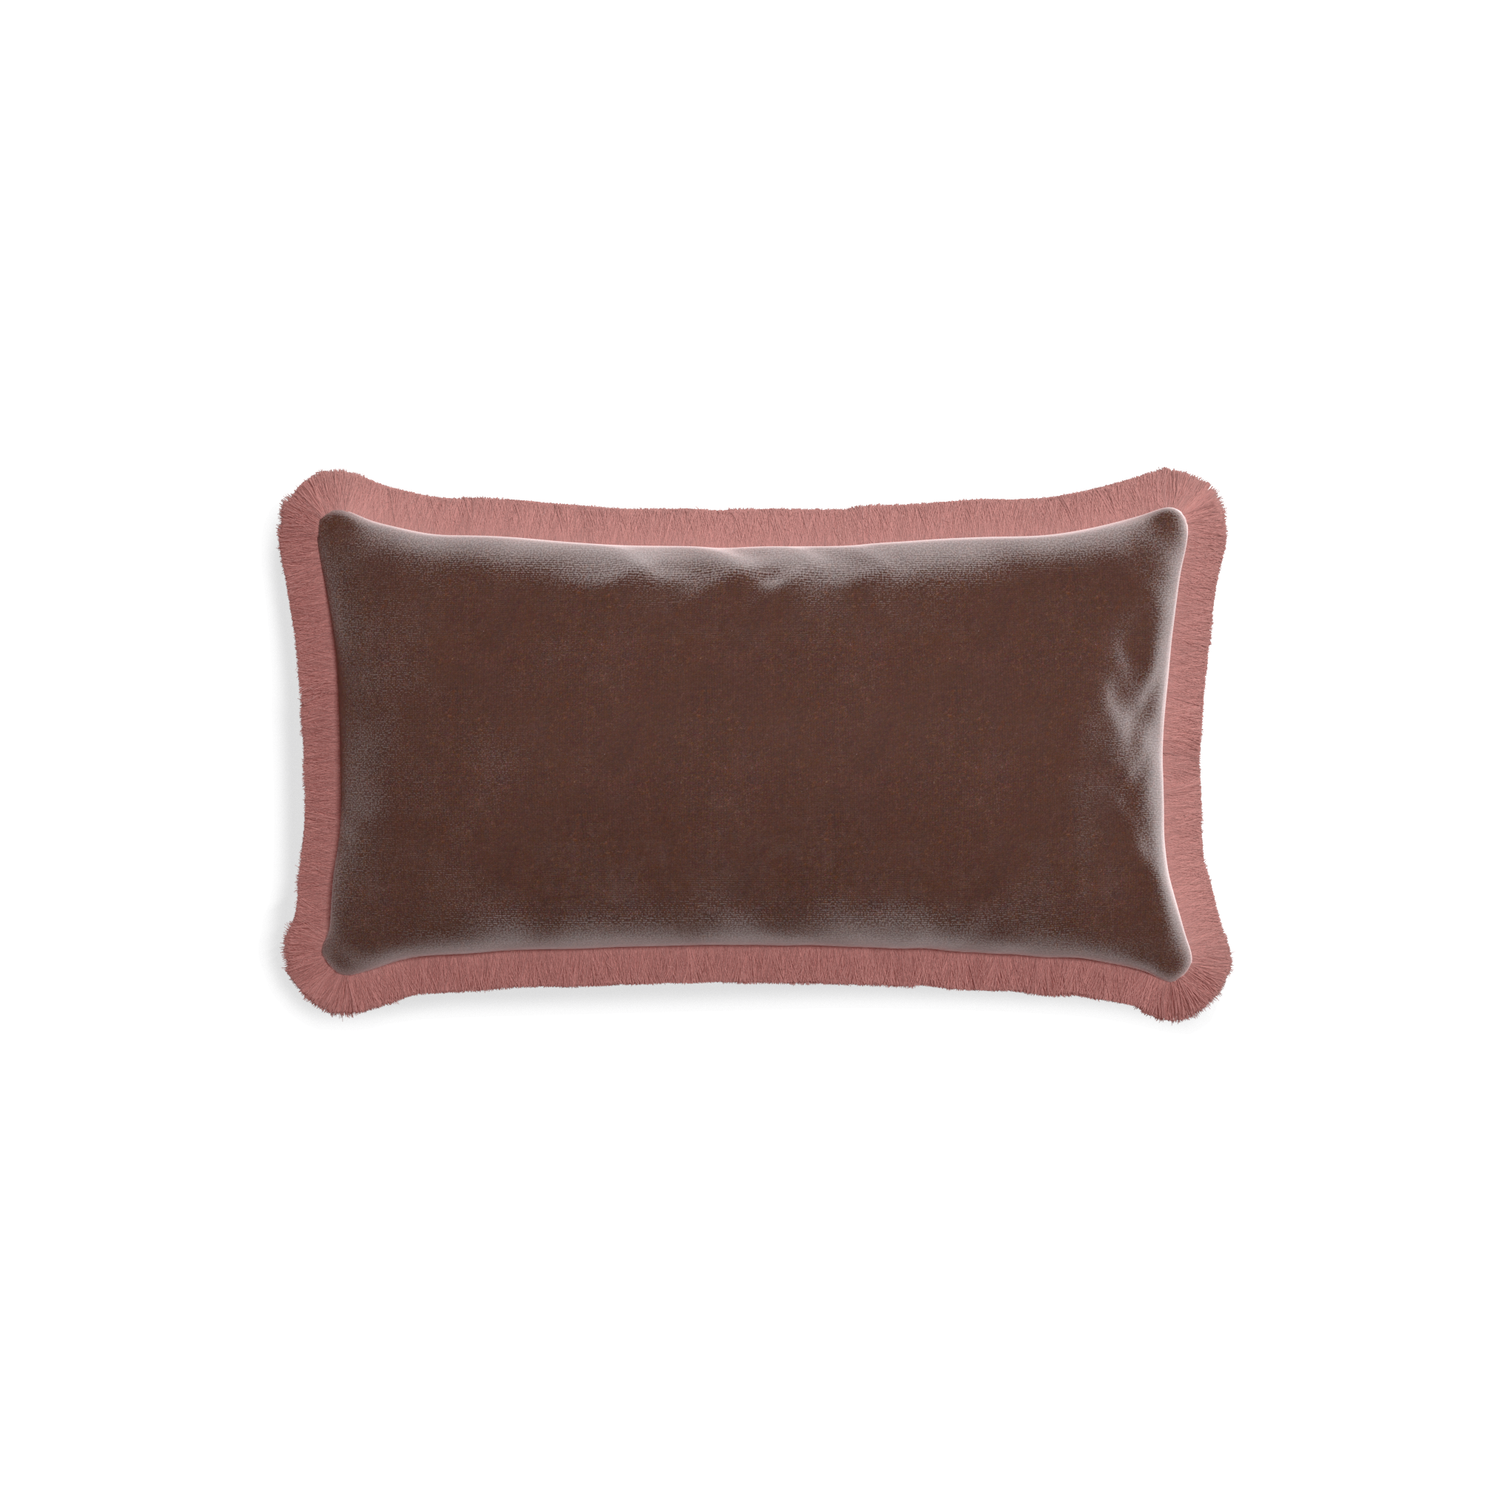 rectangle brown velvet pillow with dusty rose fringe